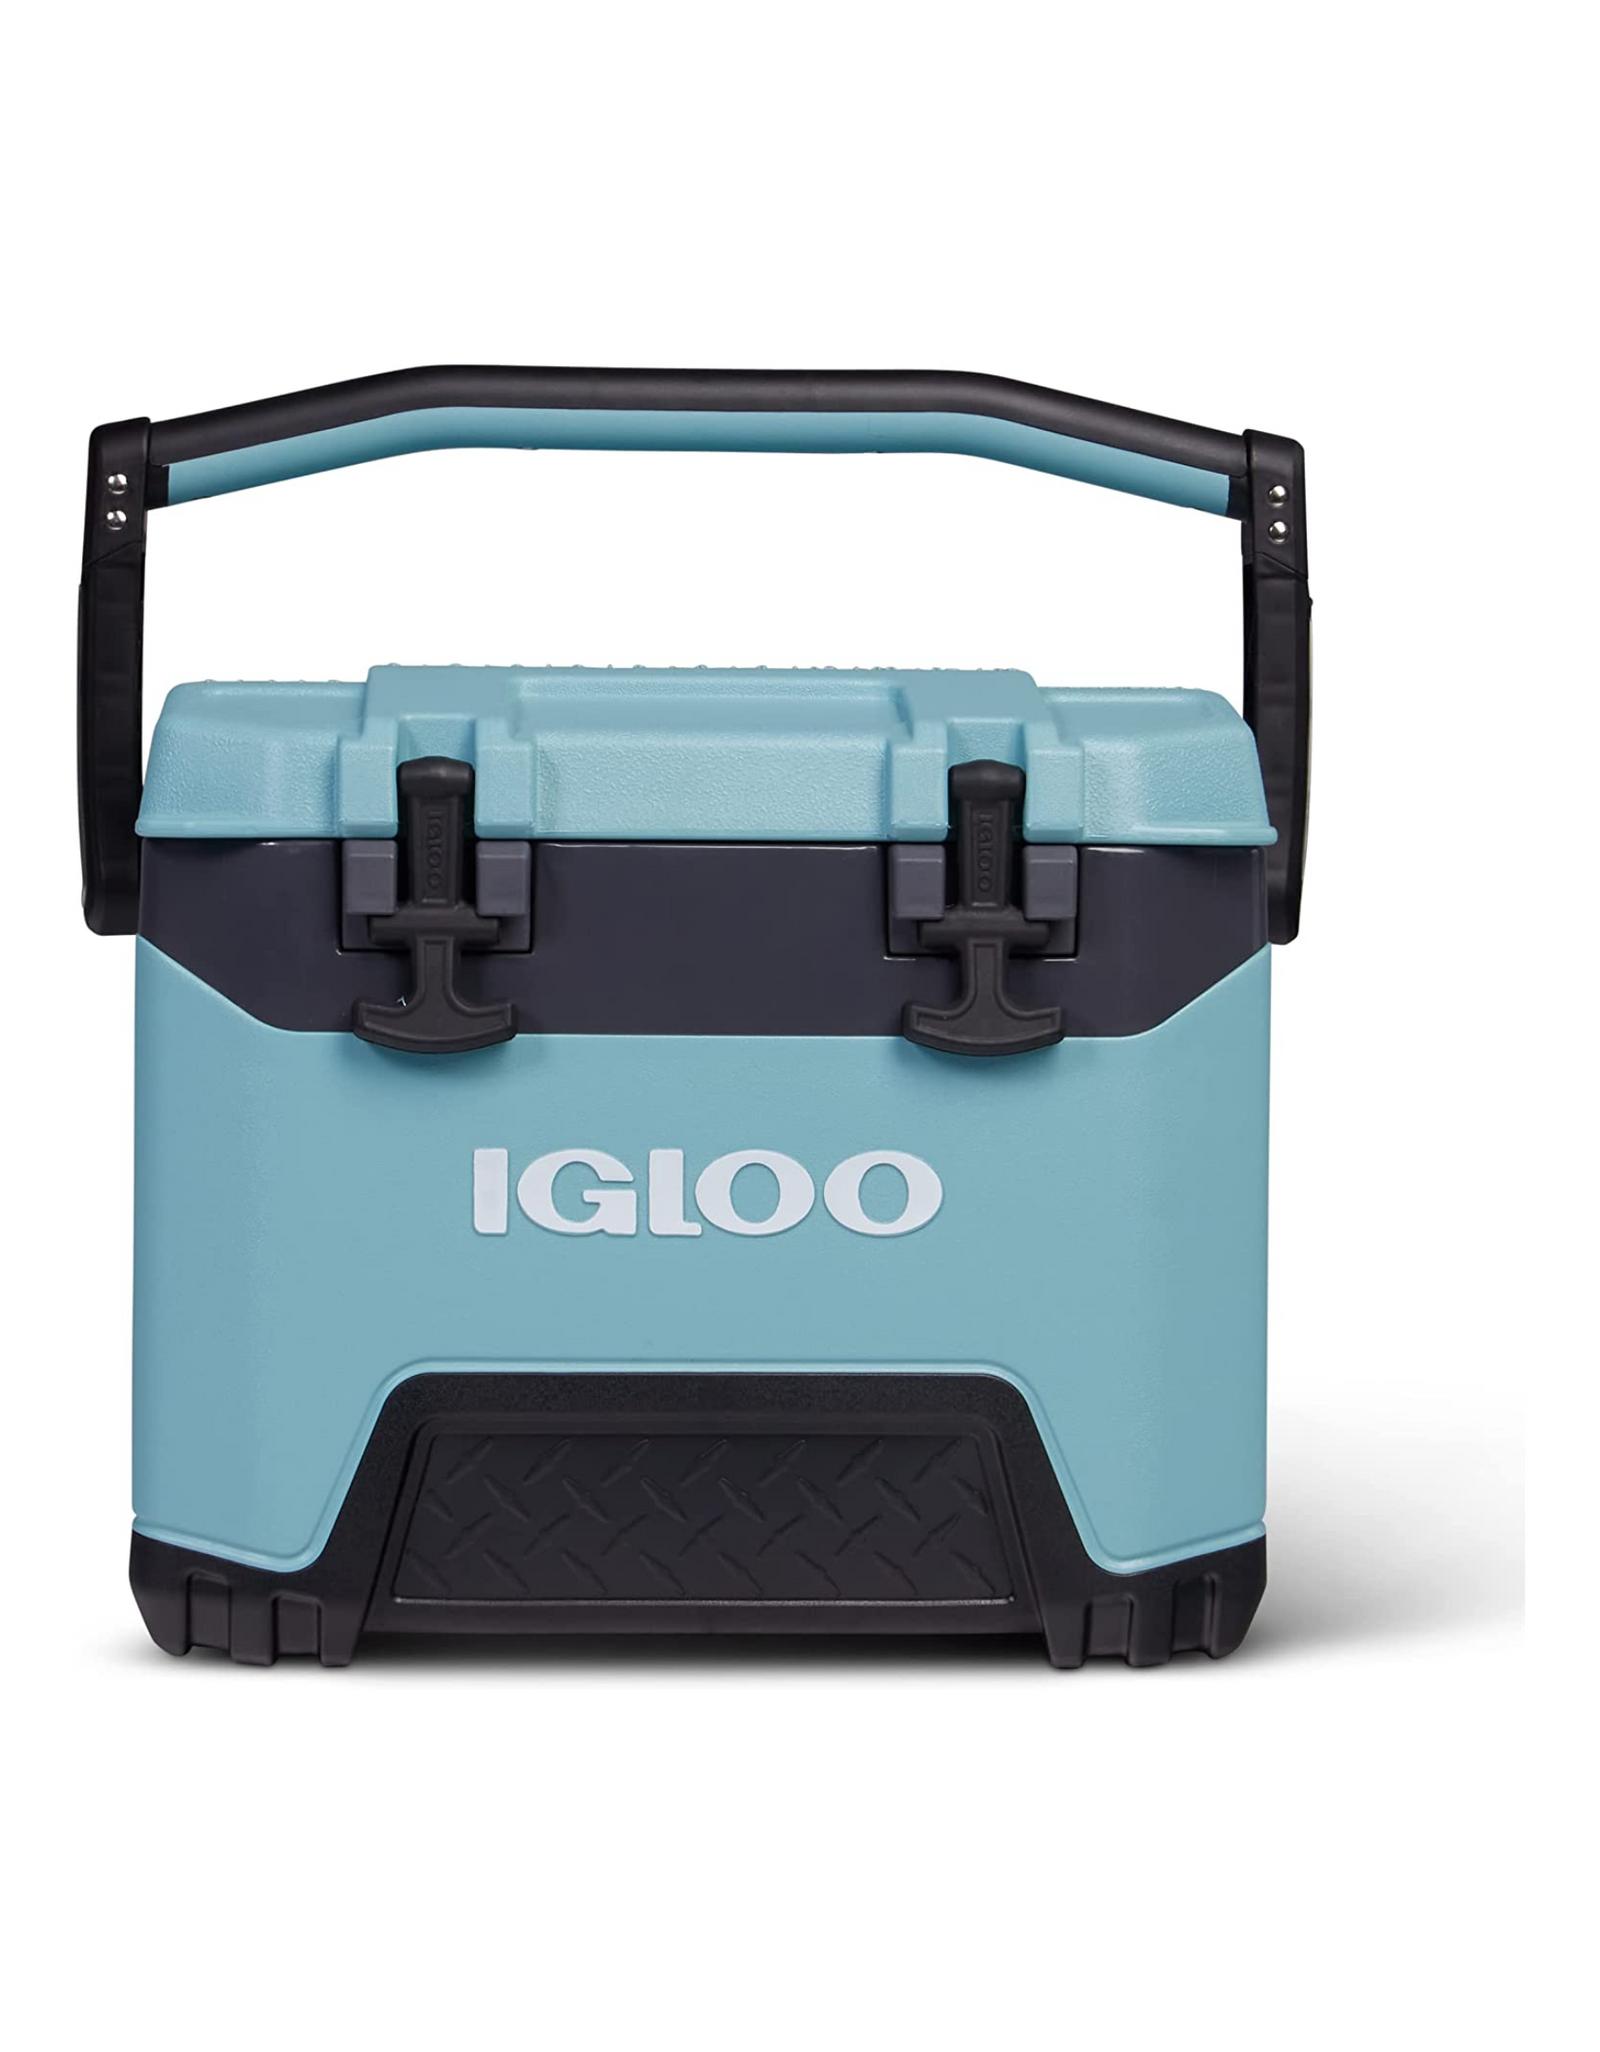 Igloo BMX 25 Quart Cooler with Cool Riser Technology, Celadon